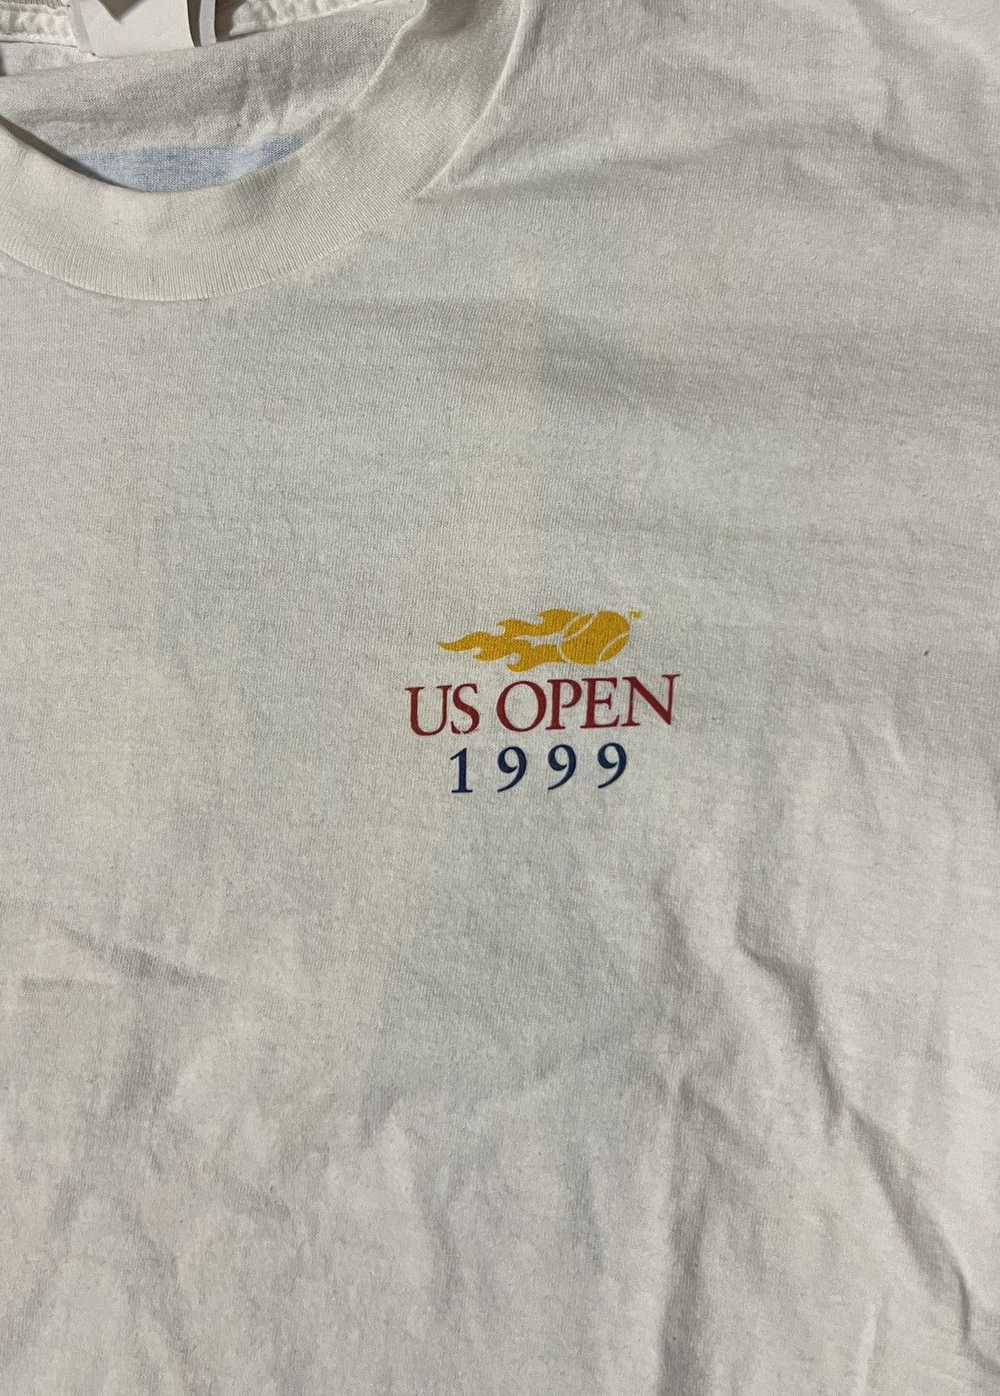 Streetwear × Vintage Vintage 1999 US Open Tee - image 4